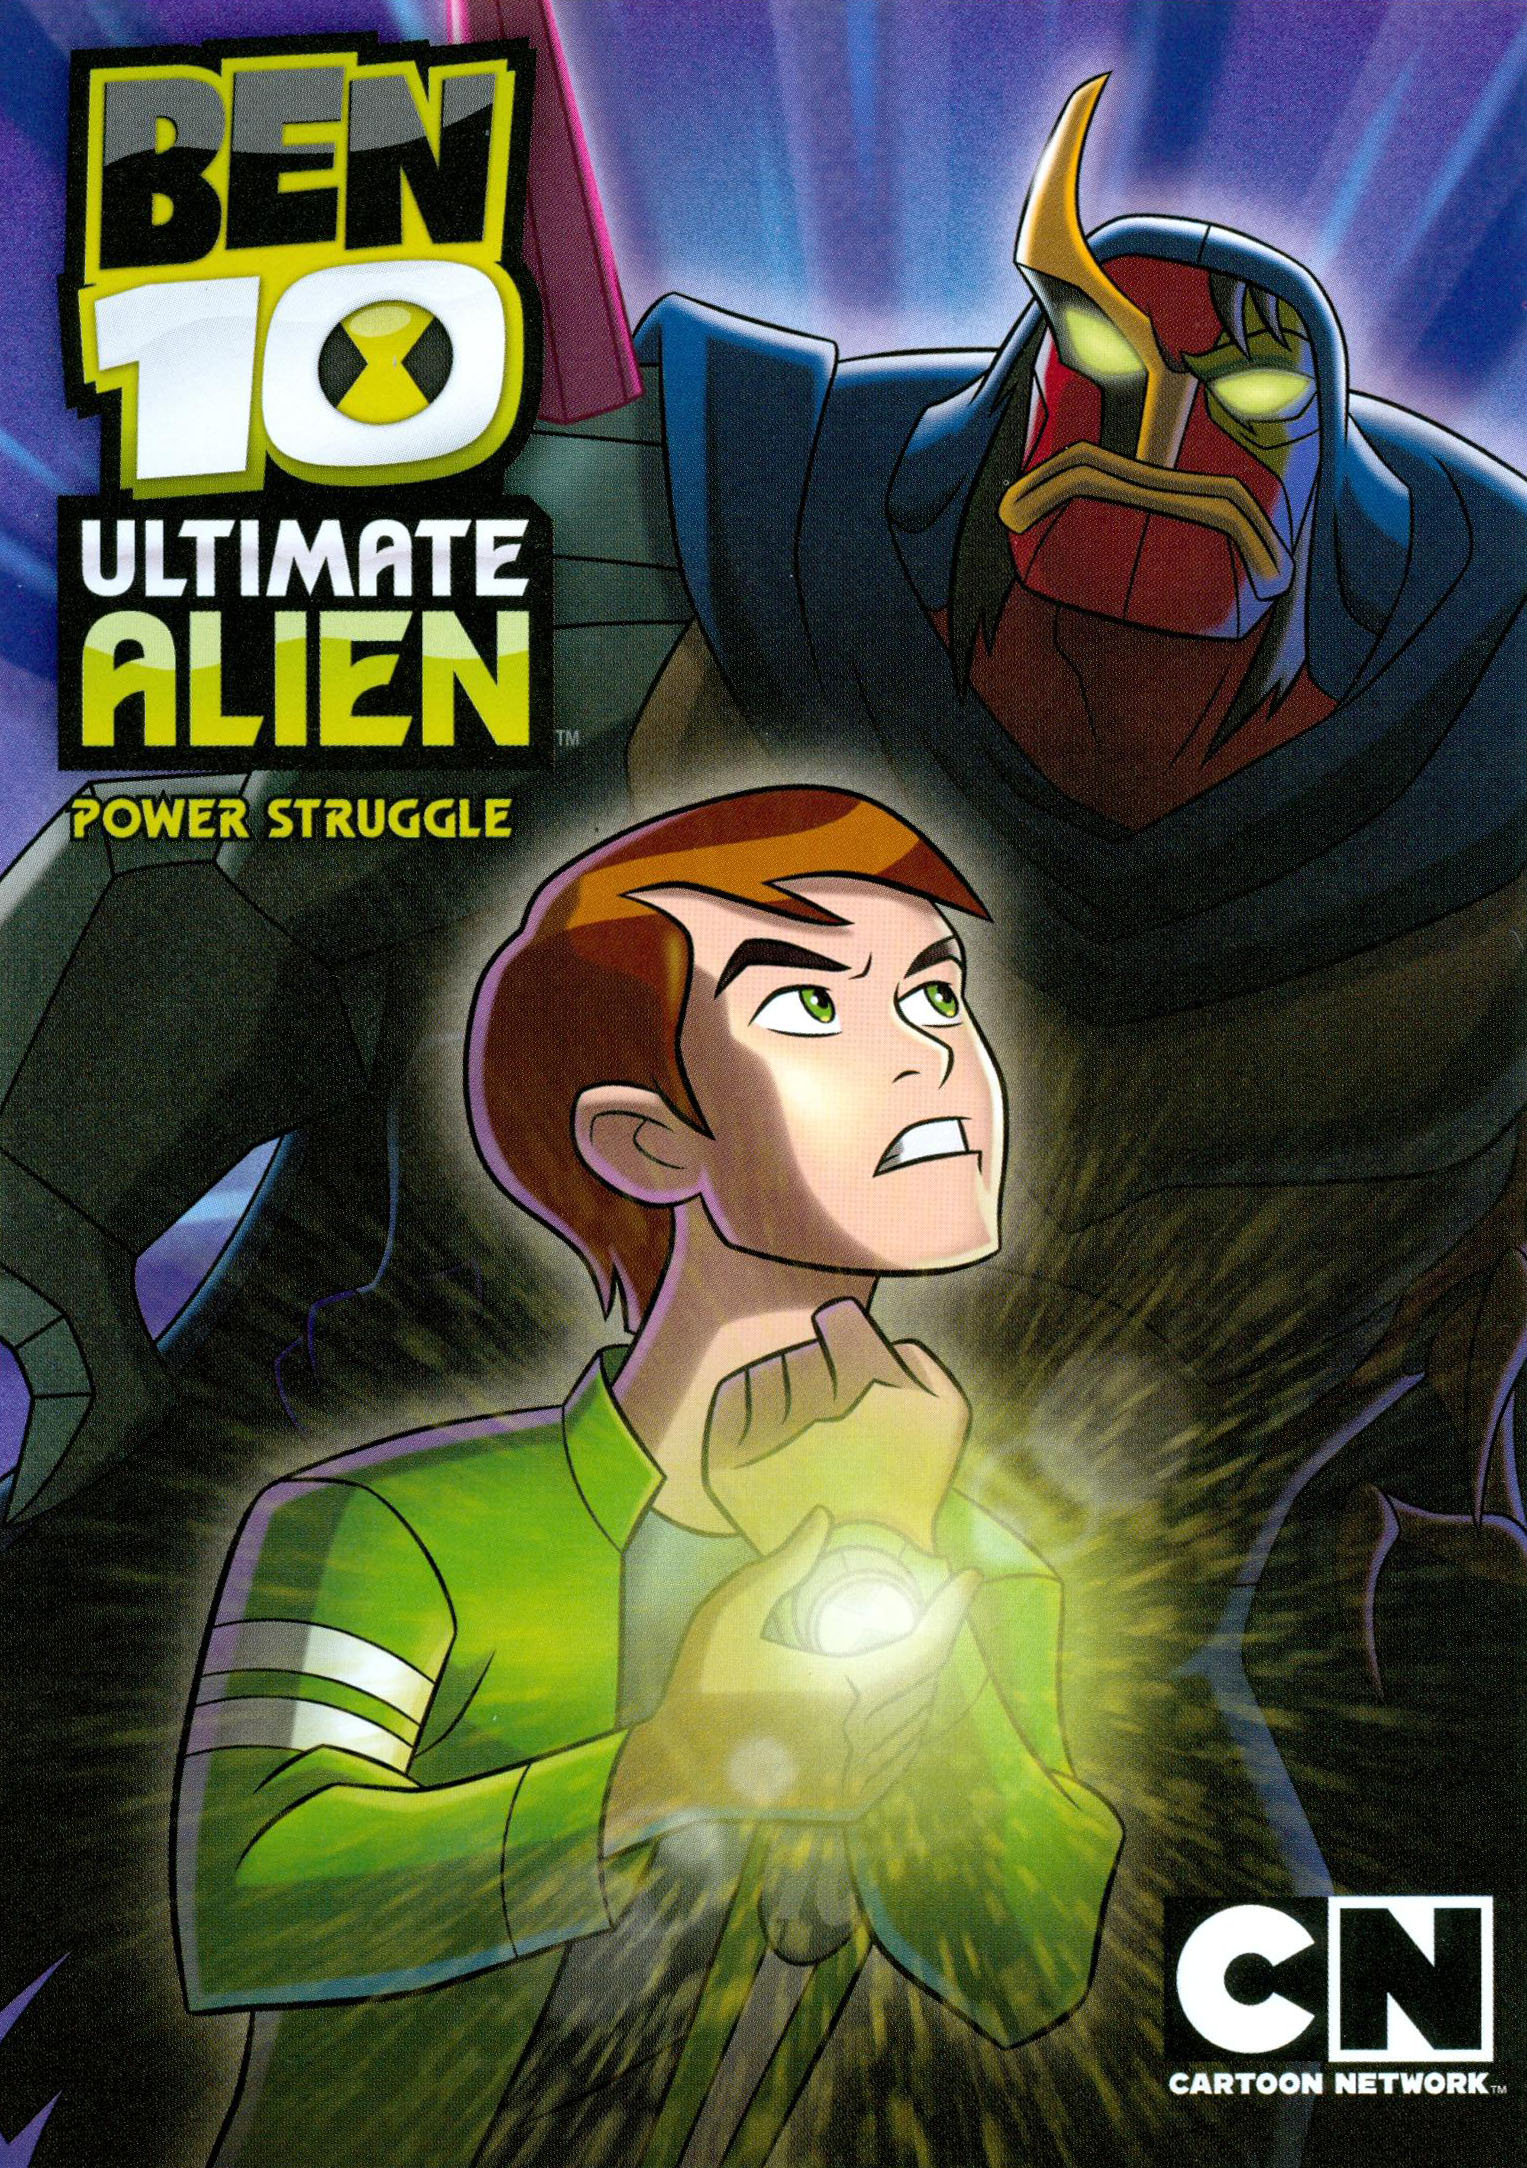 Add/Update Information: Movie - Ben 10: Alien Swarm - 2009